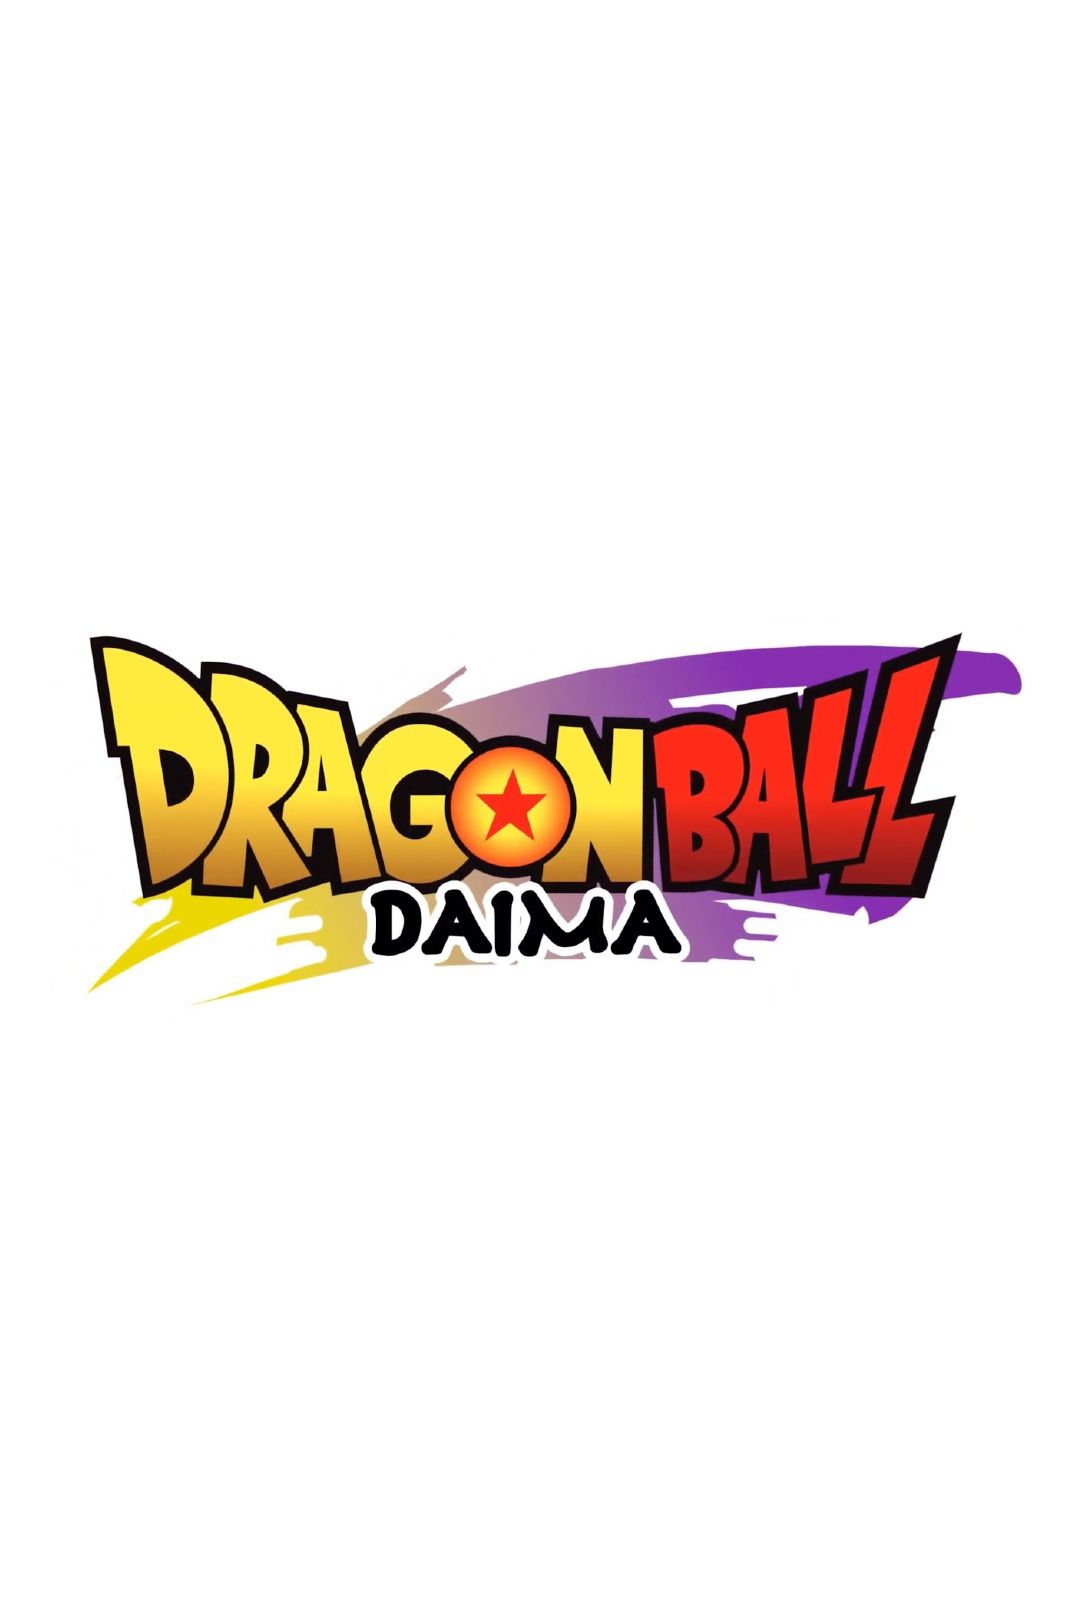 Dragon Ball Daima temp TV logo poster